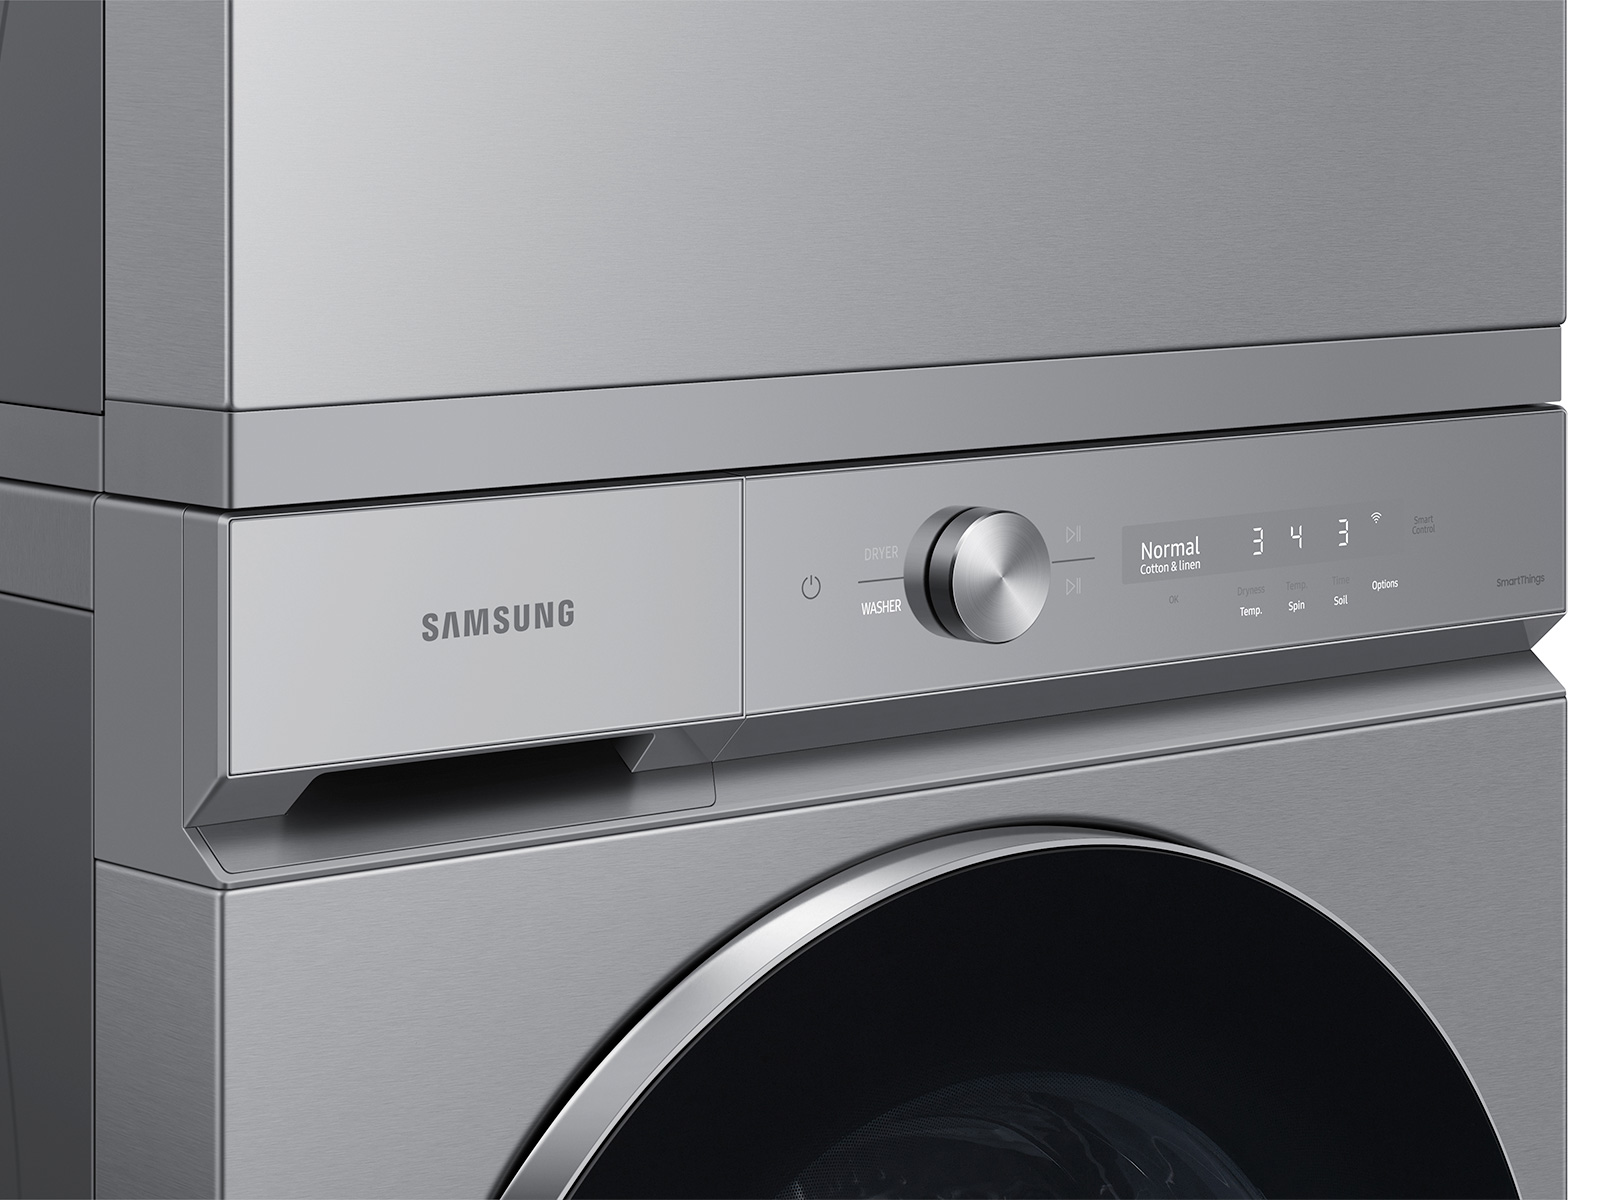 Samsung Lave-linge WW9400, 11kg, blanc, bespoke black - COOL AG